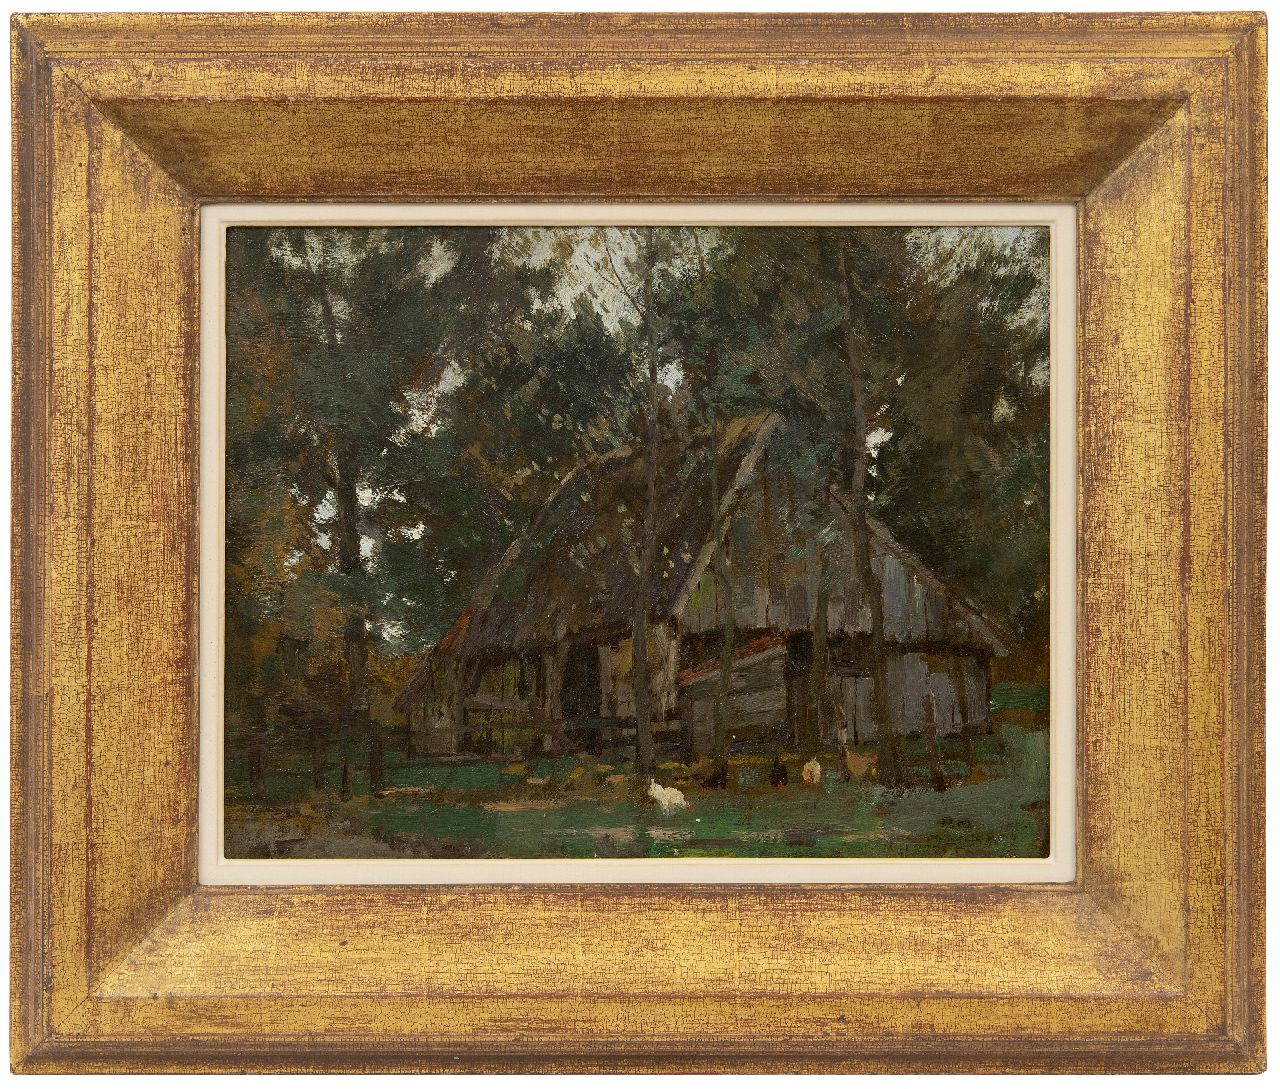 Meiners P.  | Pieter 'Piet' Meiners | Schilderijen te koop aangeboden | Schuur in het bos, olieverf op doek 41,0 x 31,0 cm, gesigneerd rechtsonder met initialen